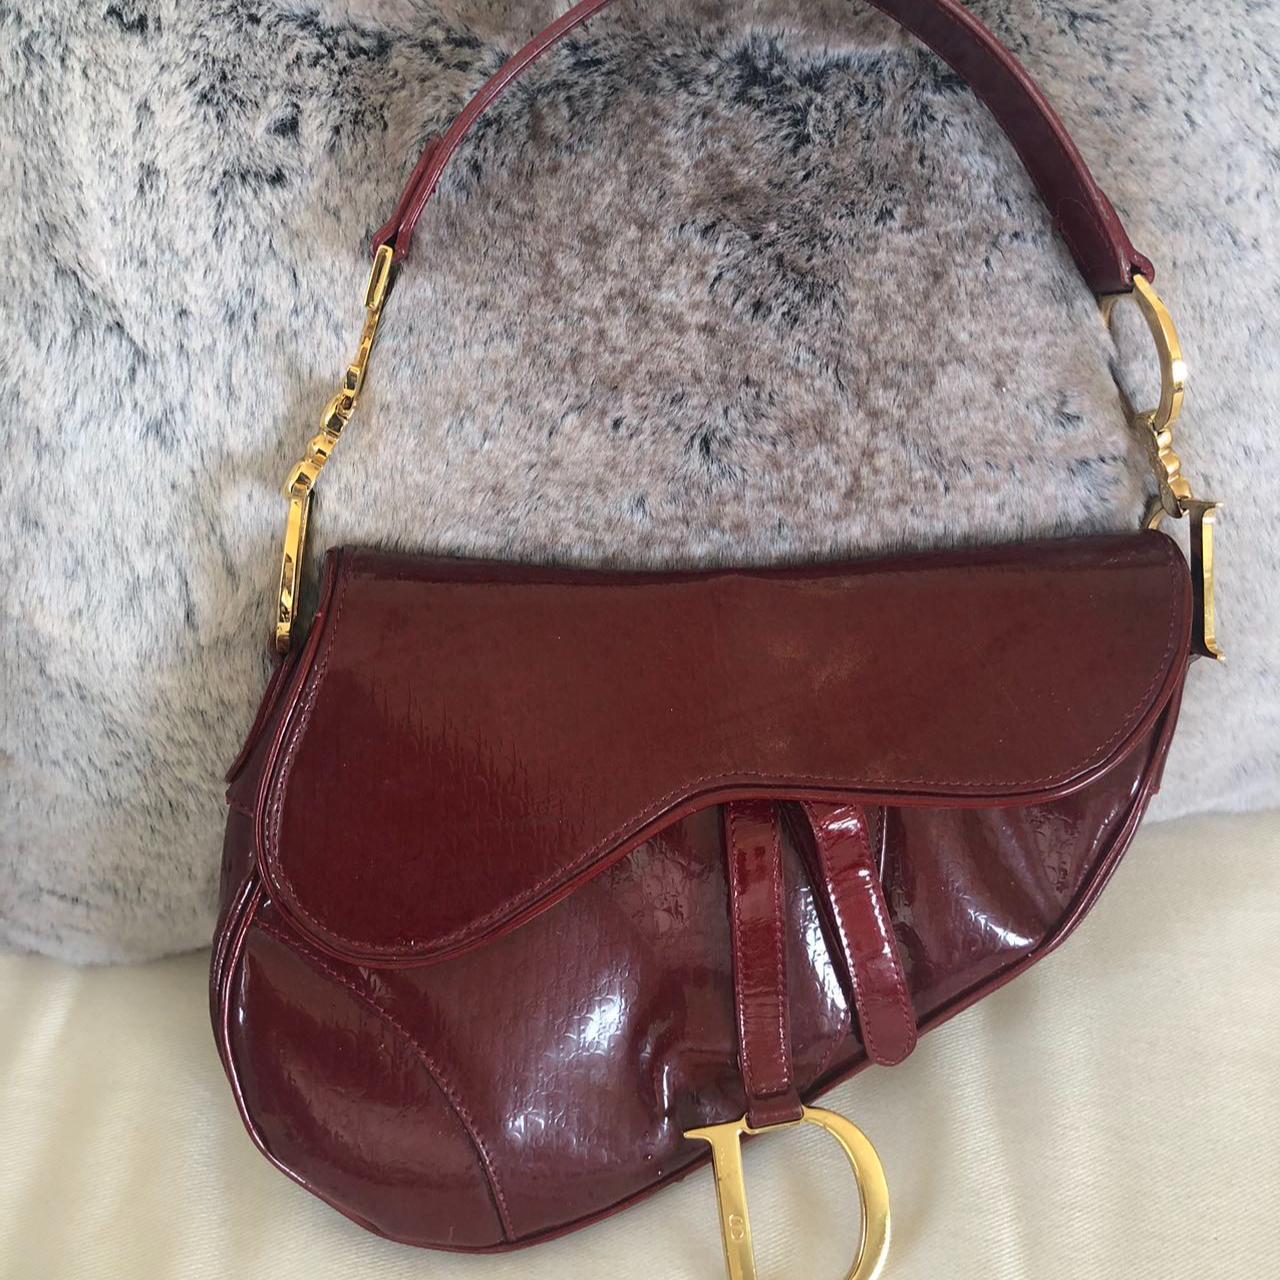 Vintage Dior saddle bag! Patent red leather with... - Depop